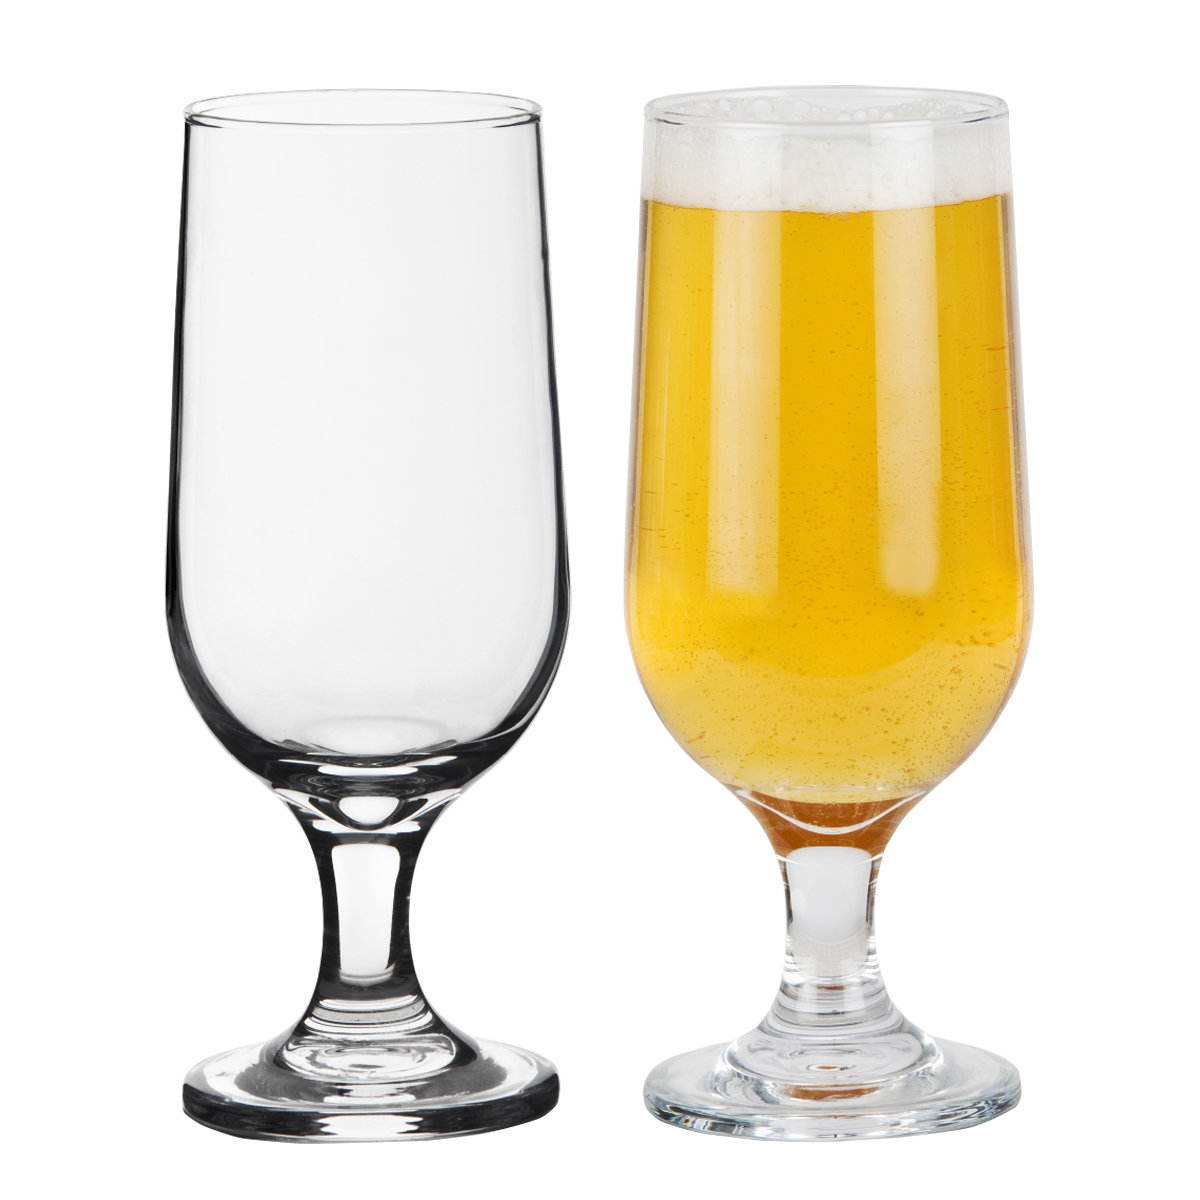 רגנסבורג - כוס בירה עם רגל.
נפח 350 מ”ל.
מידות הכוס: B66,T64,H180 מ”מ.